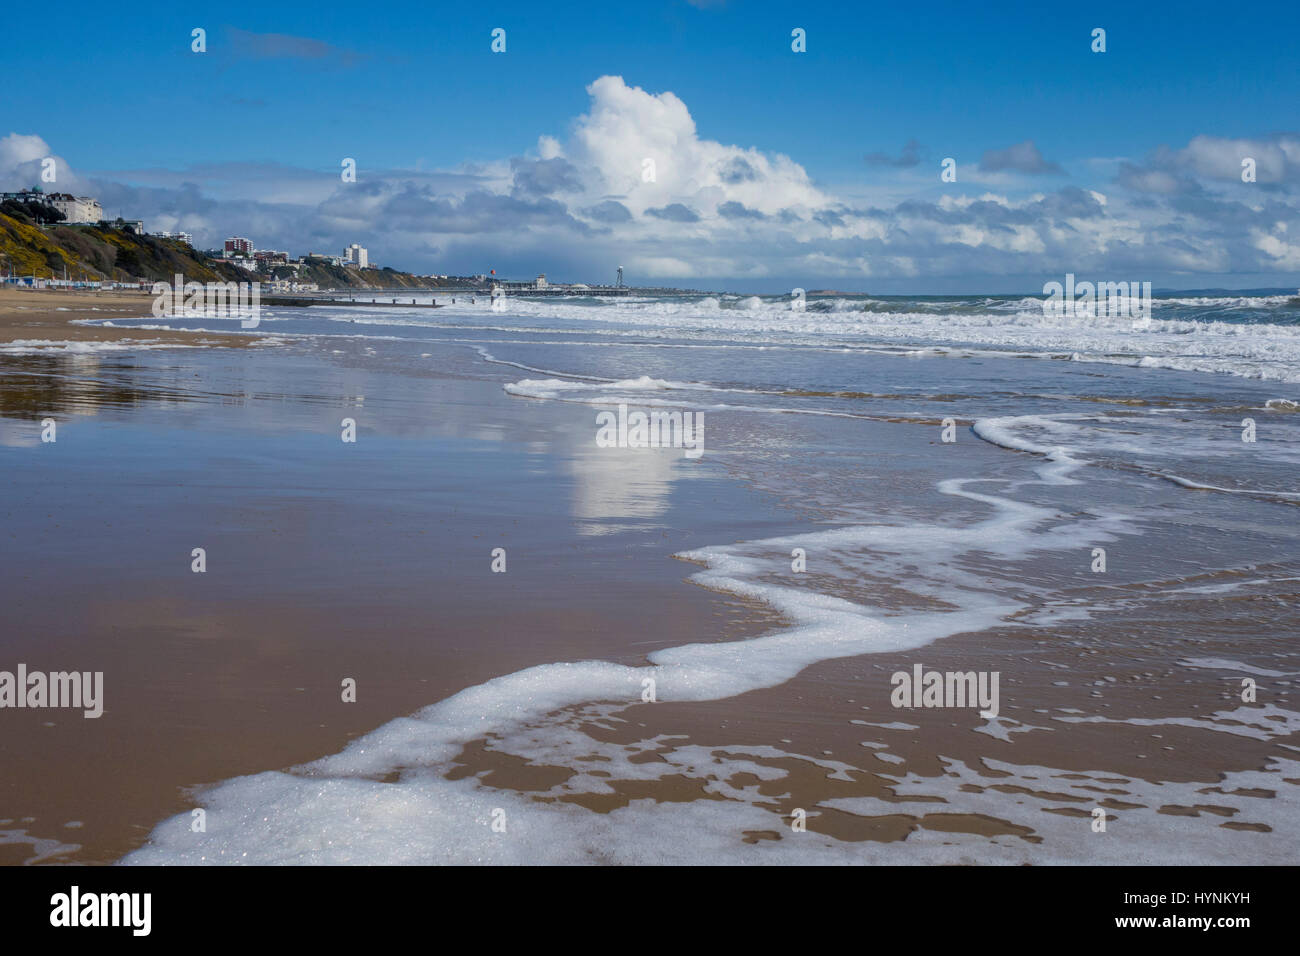 Bournemouth Beach Mostra bordo del mare con marea sulla sabbia, lasciando una riflessione di nuvole e cielo blu sul bagnato riva sabbiosa. Foto Stock